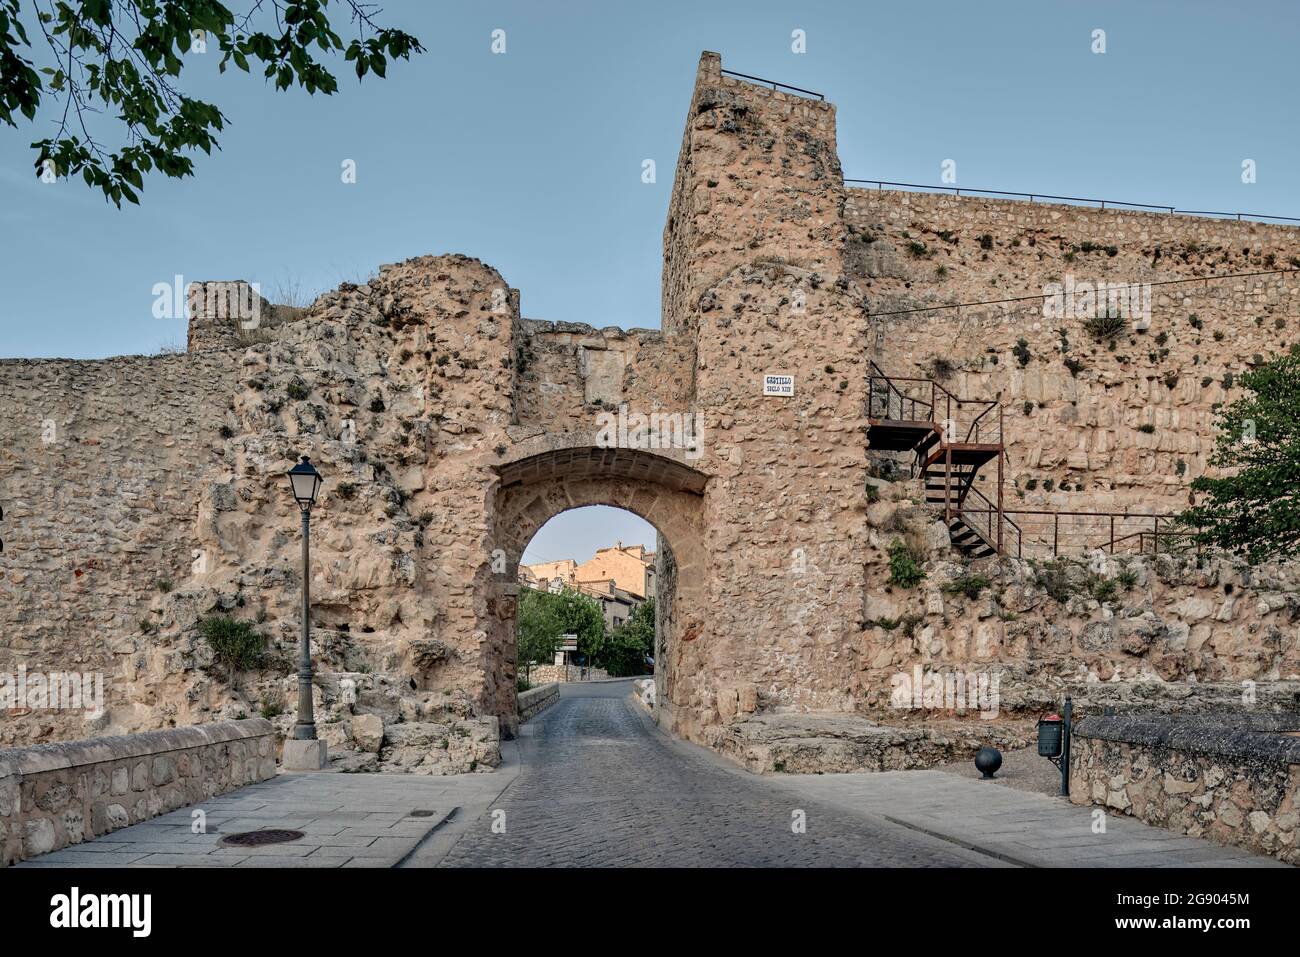 Arco de Bezudo, una de las antiguas puertas de entrada a la ciudad  amurallada de Cuenca, en las ruinas de un antiguo castillo del s. XIII,  Castilla la Mancha, España Fotografía de